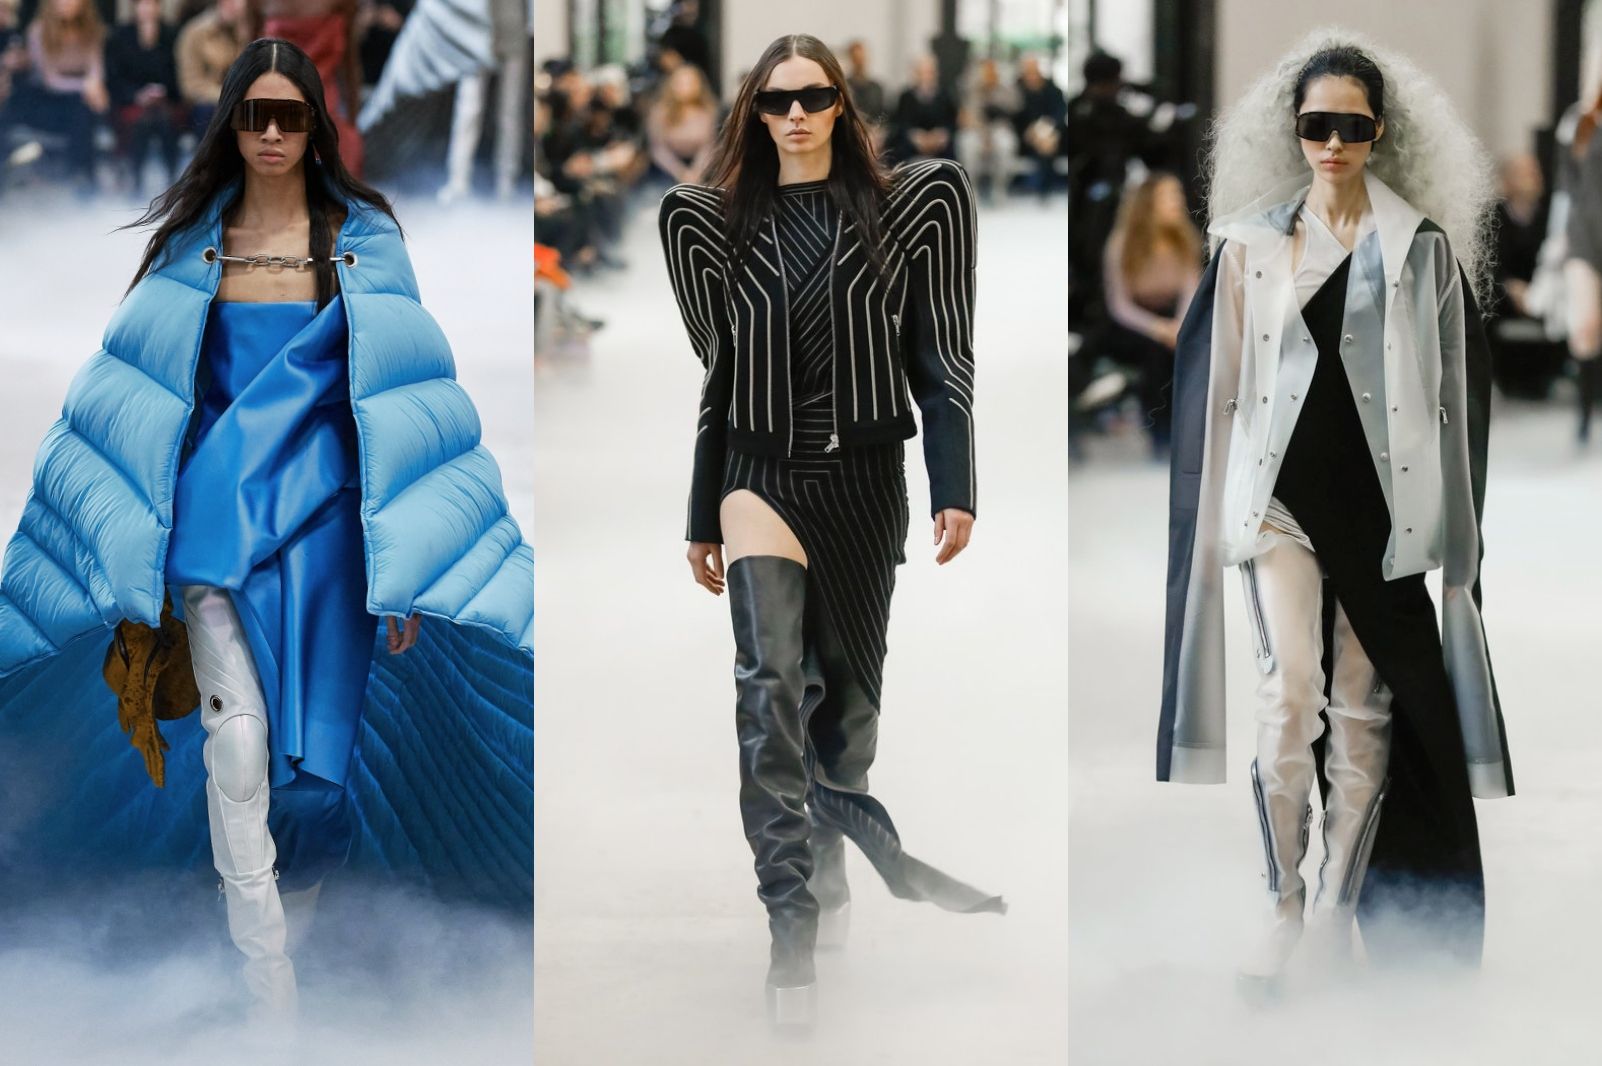 Designers sent apocalyptic warnings at Paris Fashion Week